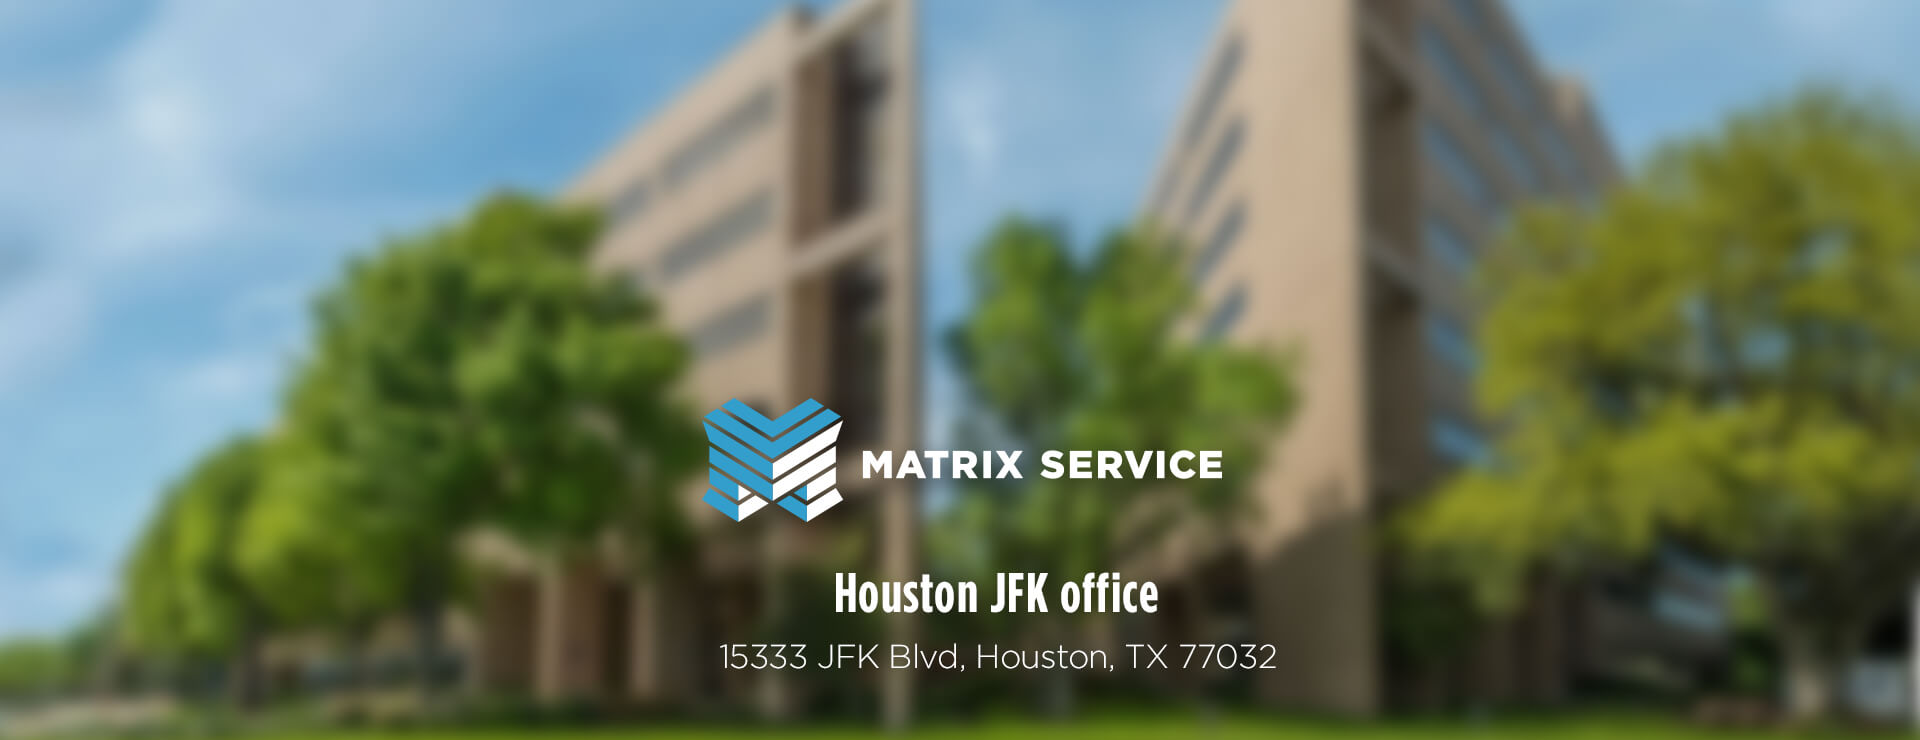 Matrix Service Houston JFK Office